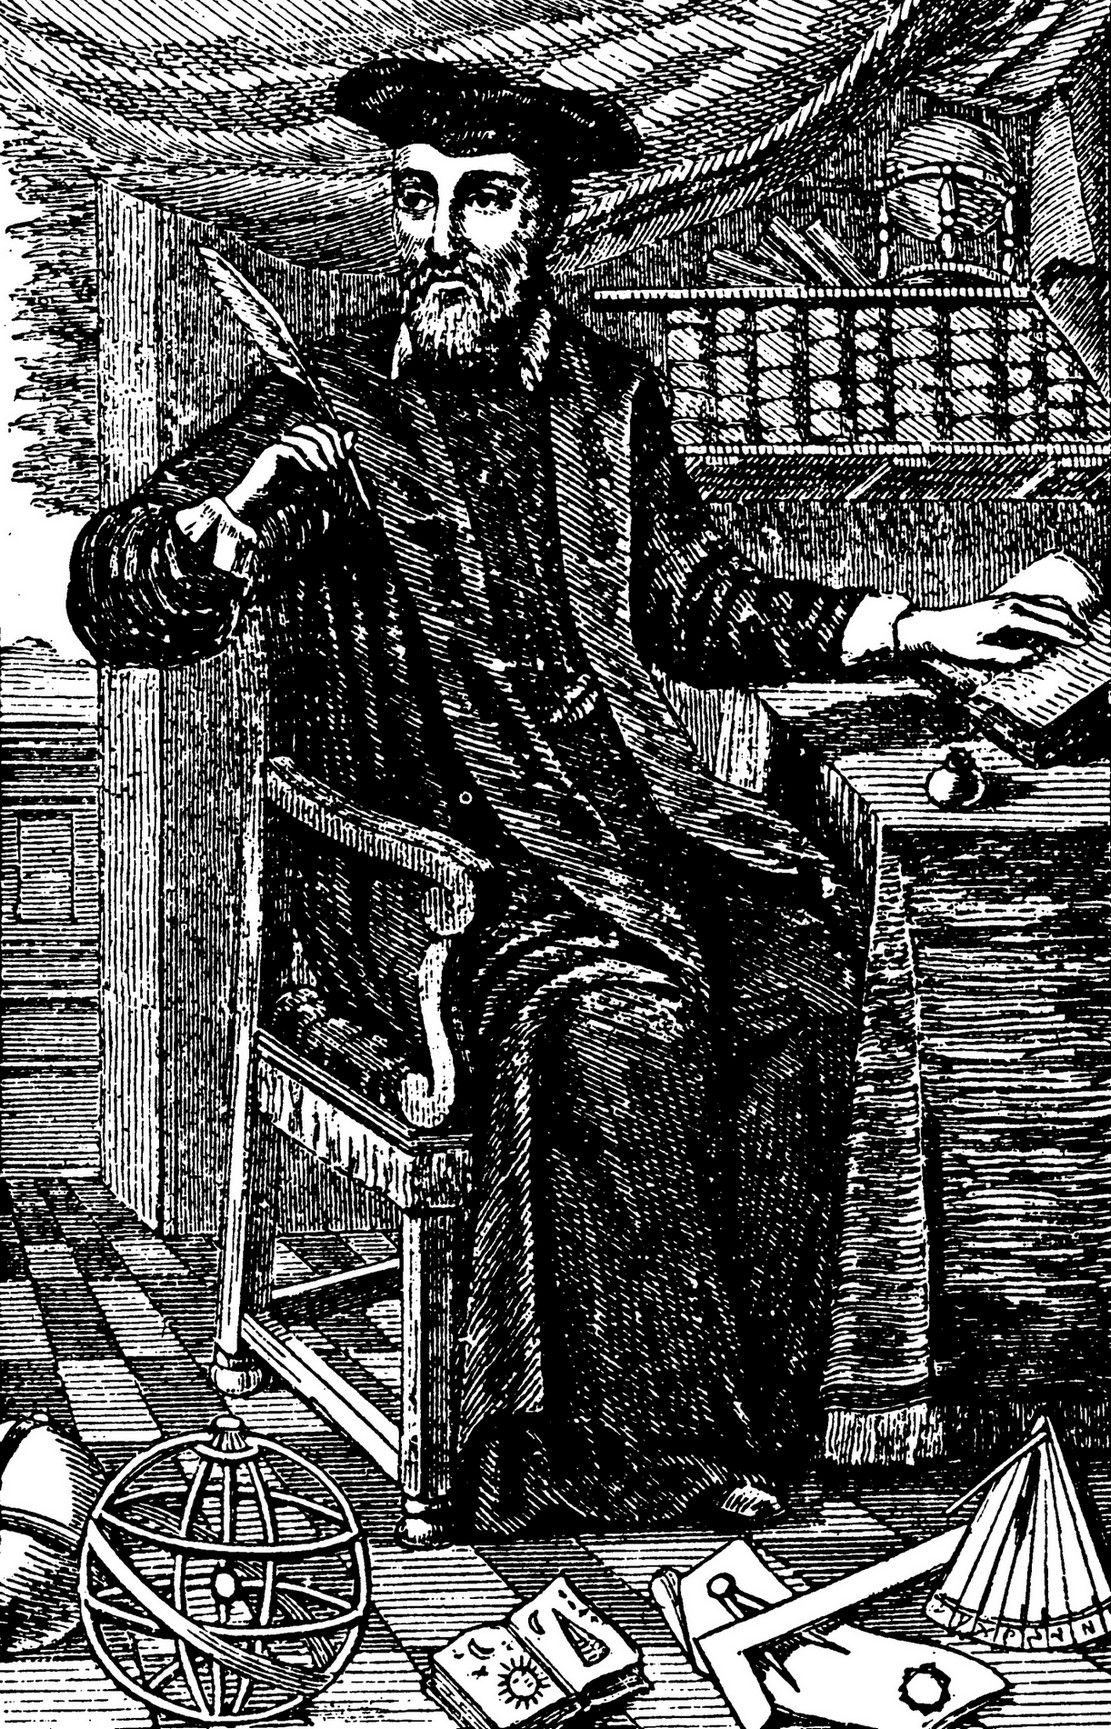 Przywoływanie w zaklęciach Nostradamusa jako sposób na uzdrowienie trędowatego? Cóż, to nie najbardziej kuriozalna metoda "leczenia", a przynajmniej niezbyt szkodliwa... Portret Nostradamusa z kolekcji jego przepowiedni wydanej w 1666 roku (źródło: domena publiczna).